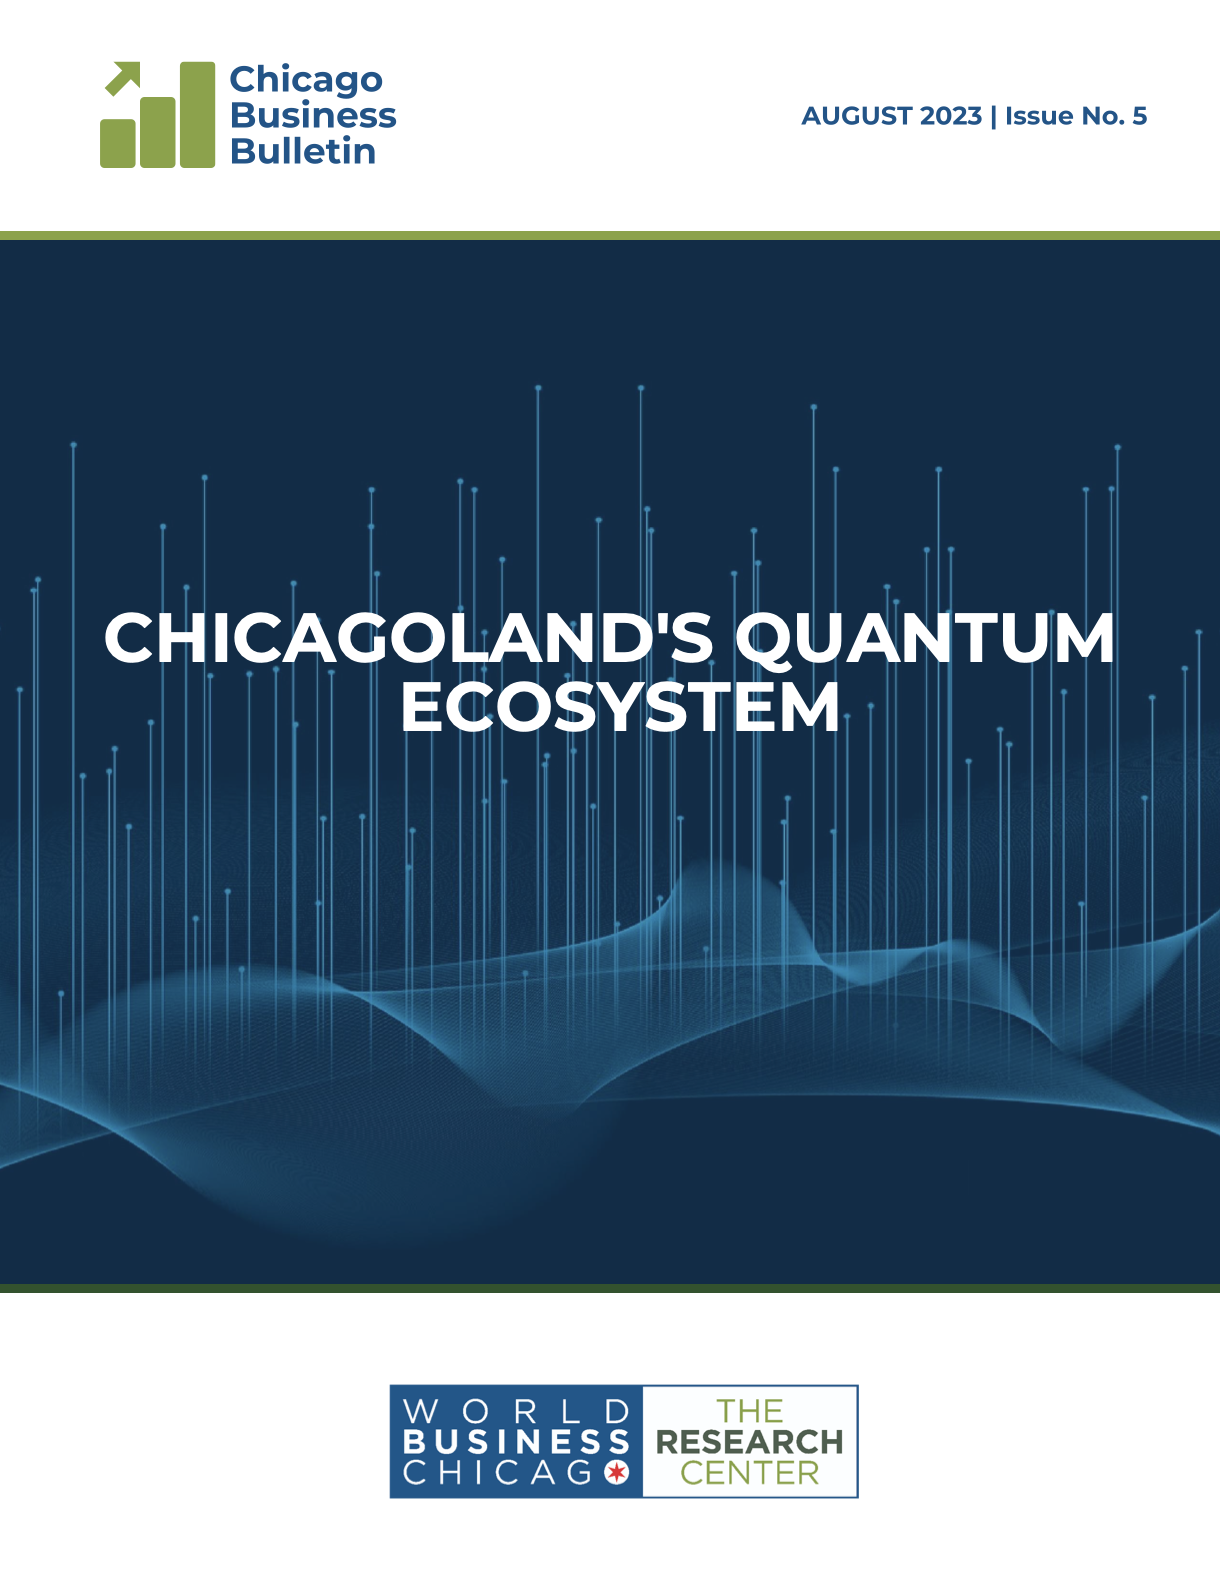 chicagolan's quantum ecosystem 